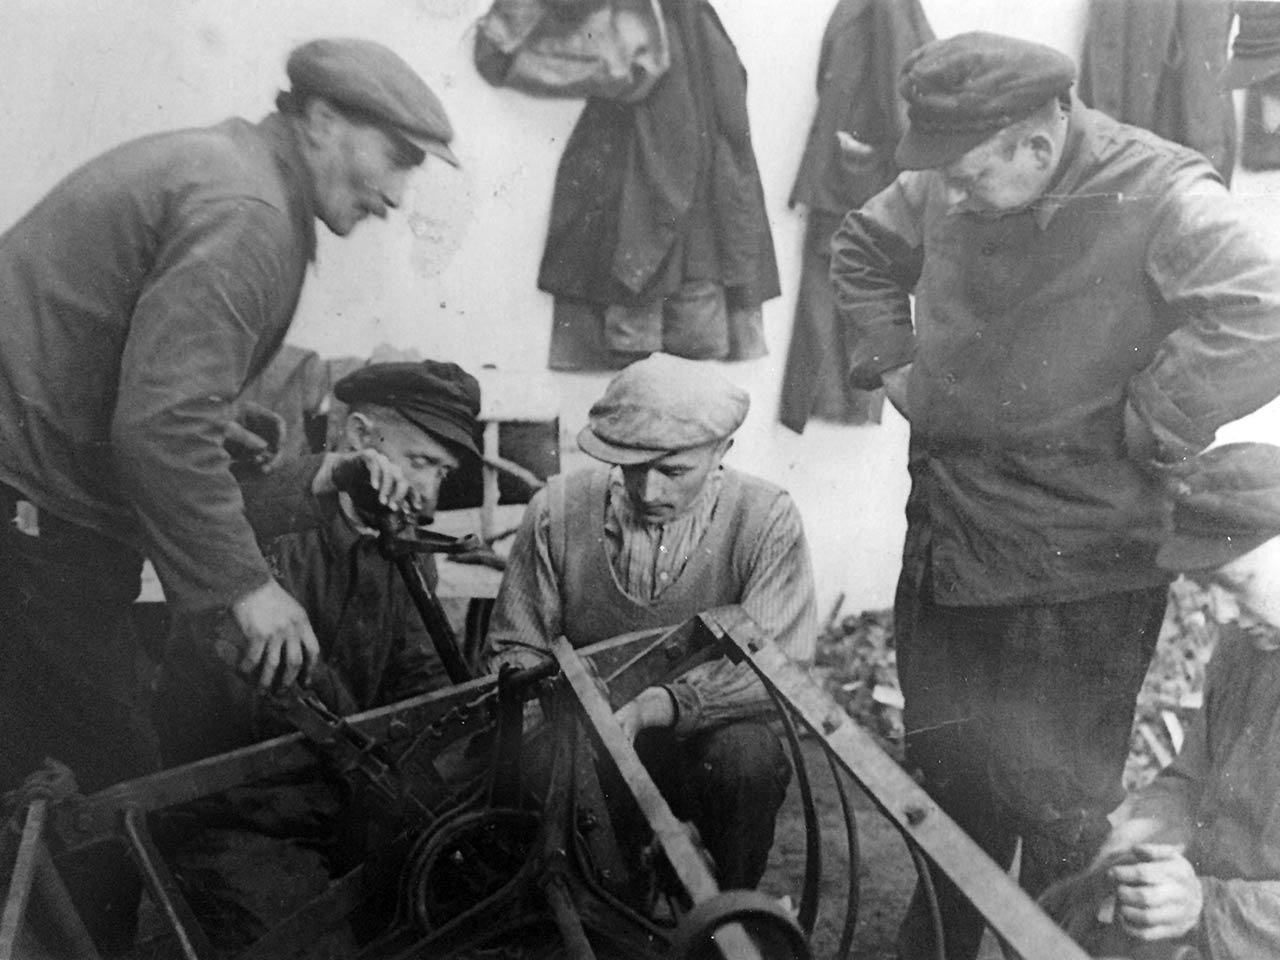 1935 - Reparatur an landwirtschaftlichem Gerät